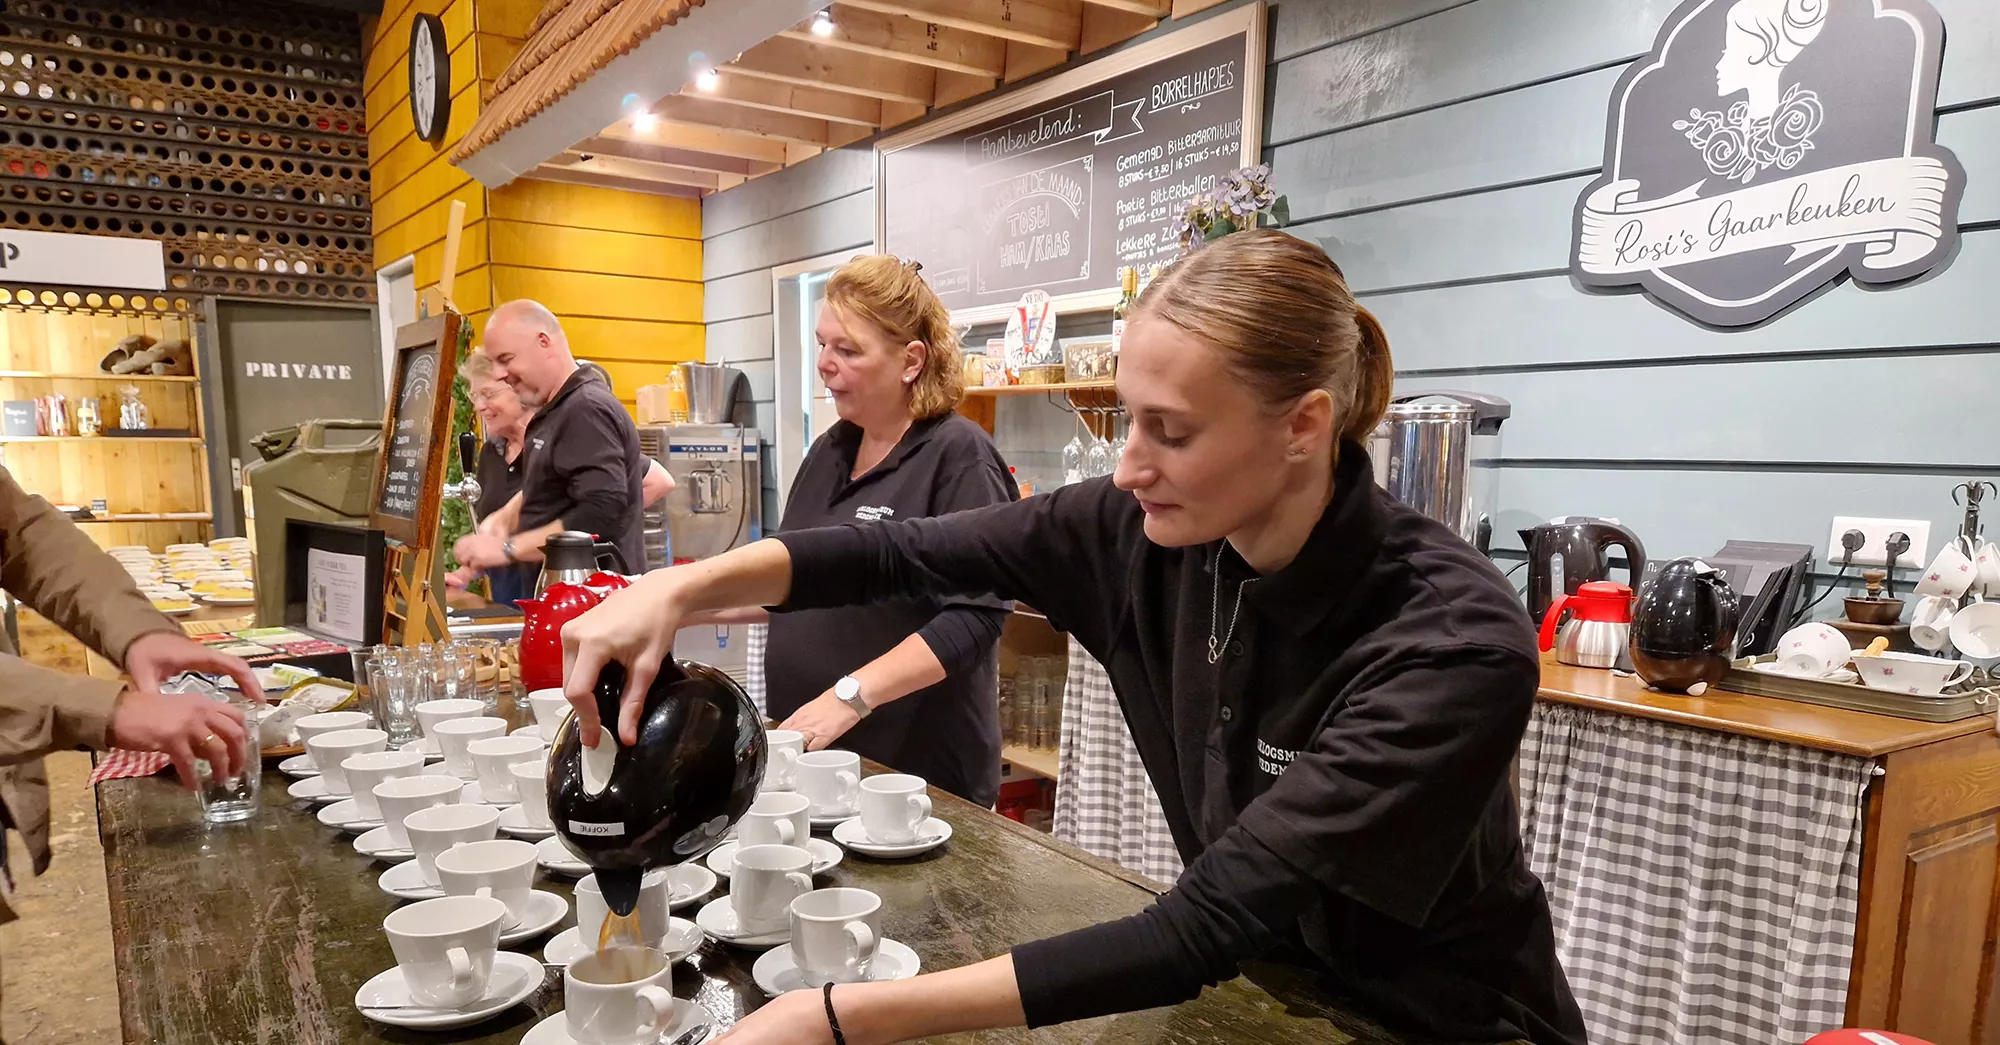 Stagiair loopt stage in een leuk museum dat erkend leerbedrijf is, stagiair schenkt koffie voor bezoekers en staat achter de bar